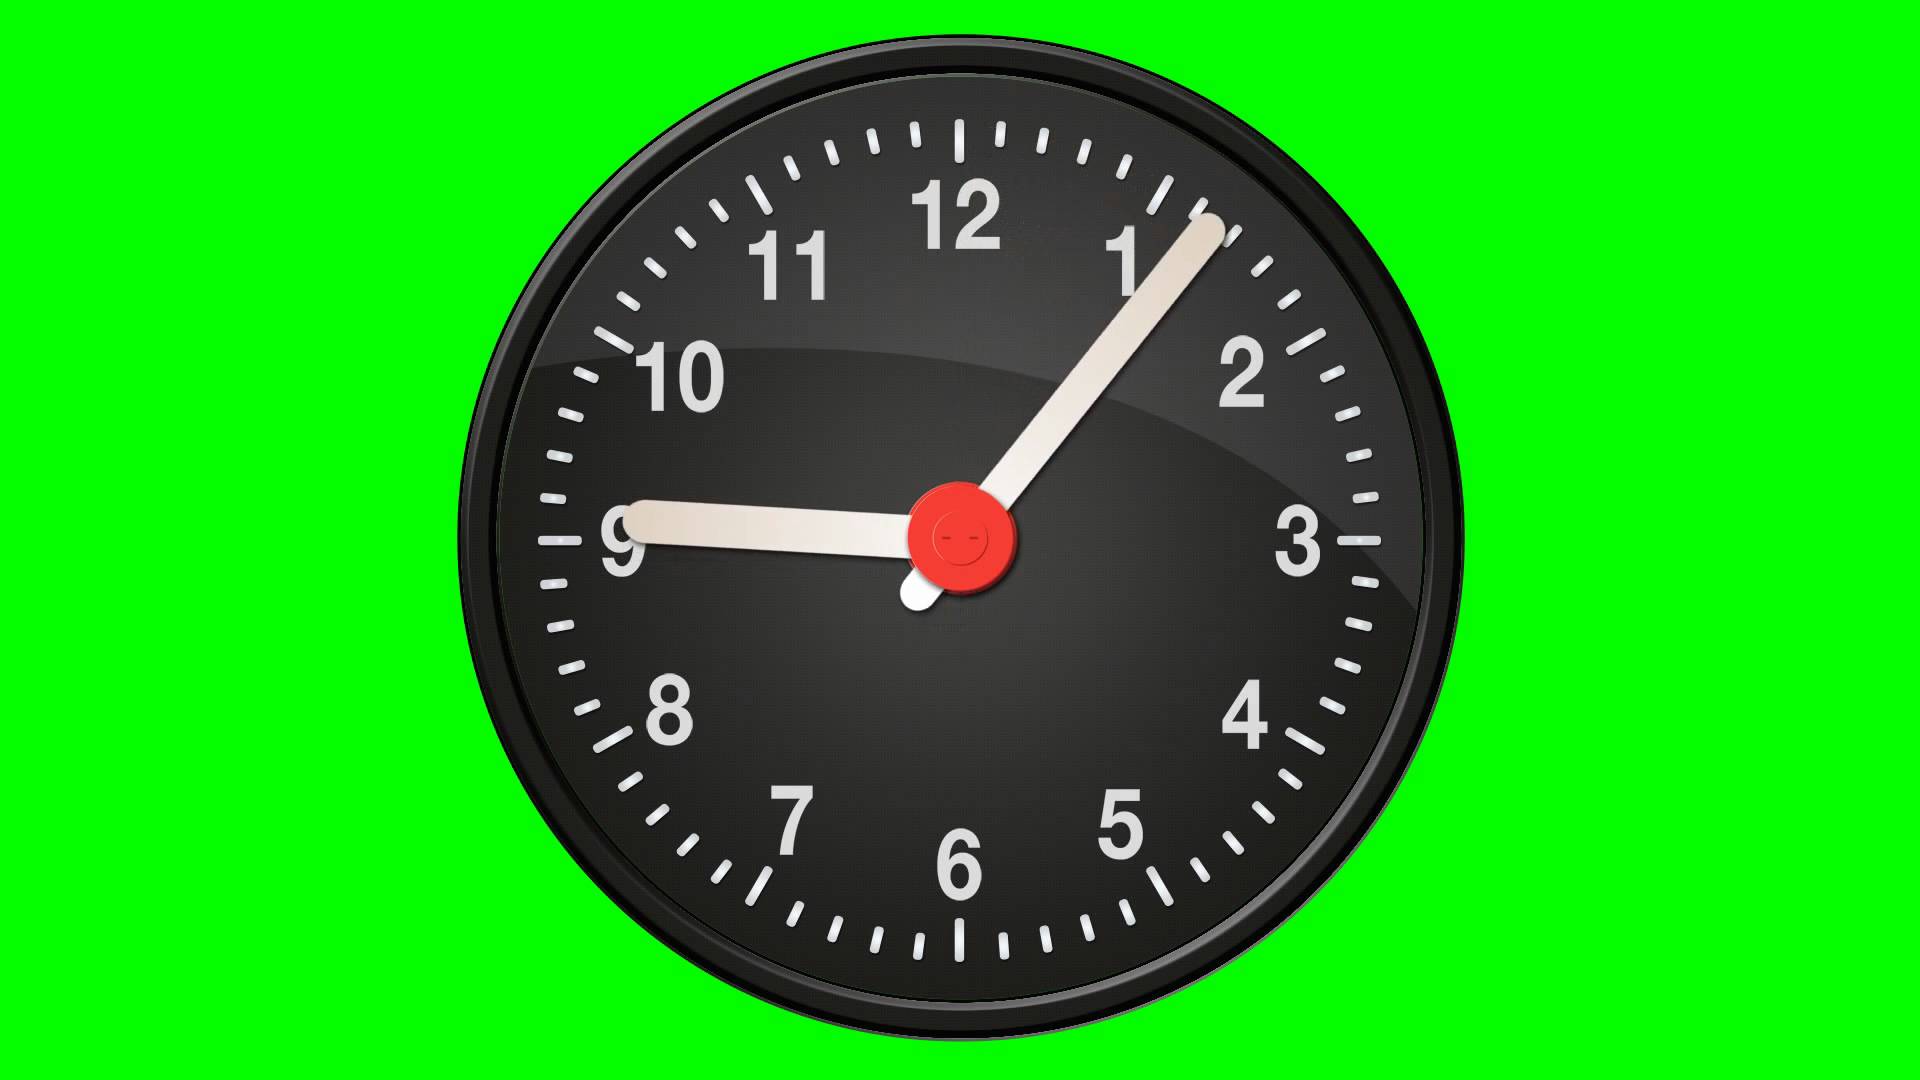 Видео 50 часов. Часы хромакей. Часы на зеленом фоне. Часы футаж. Часы для монтажа.